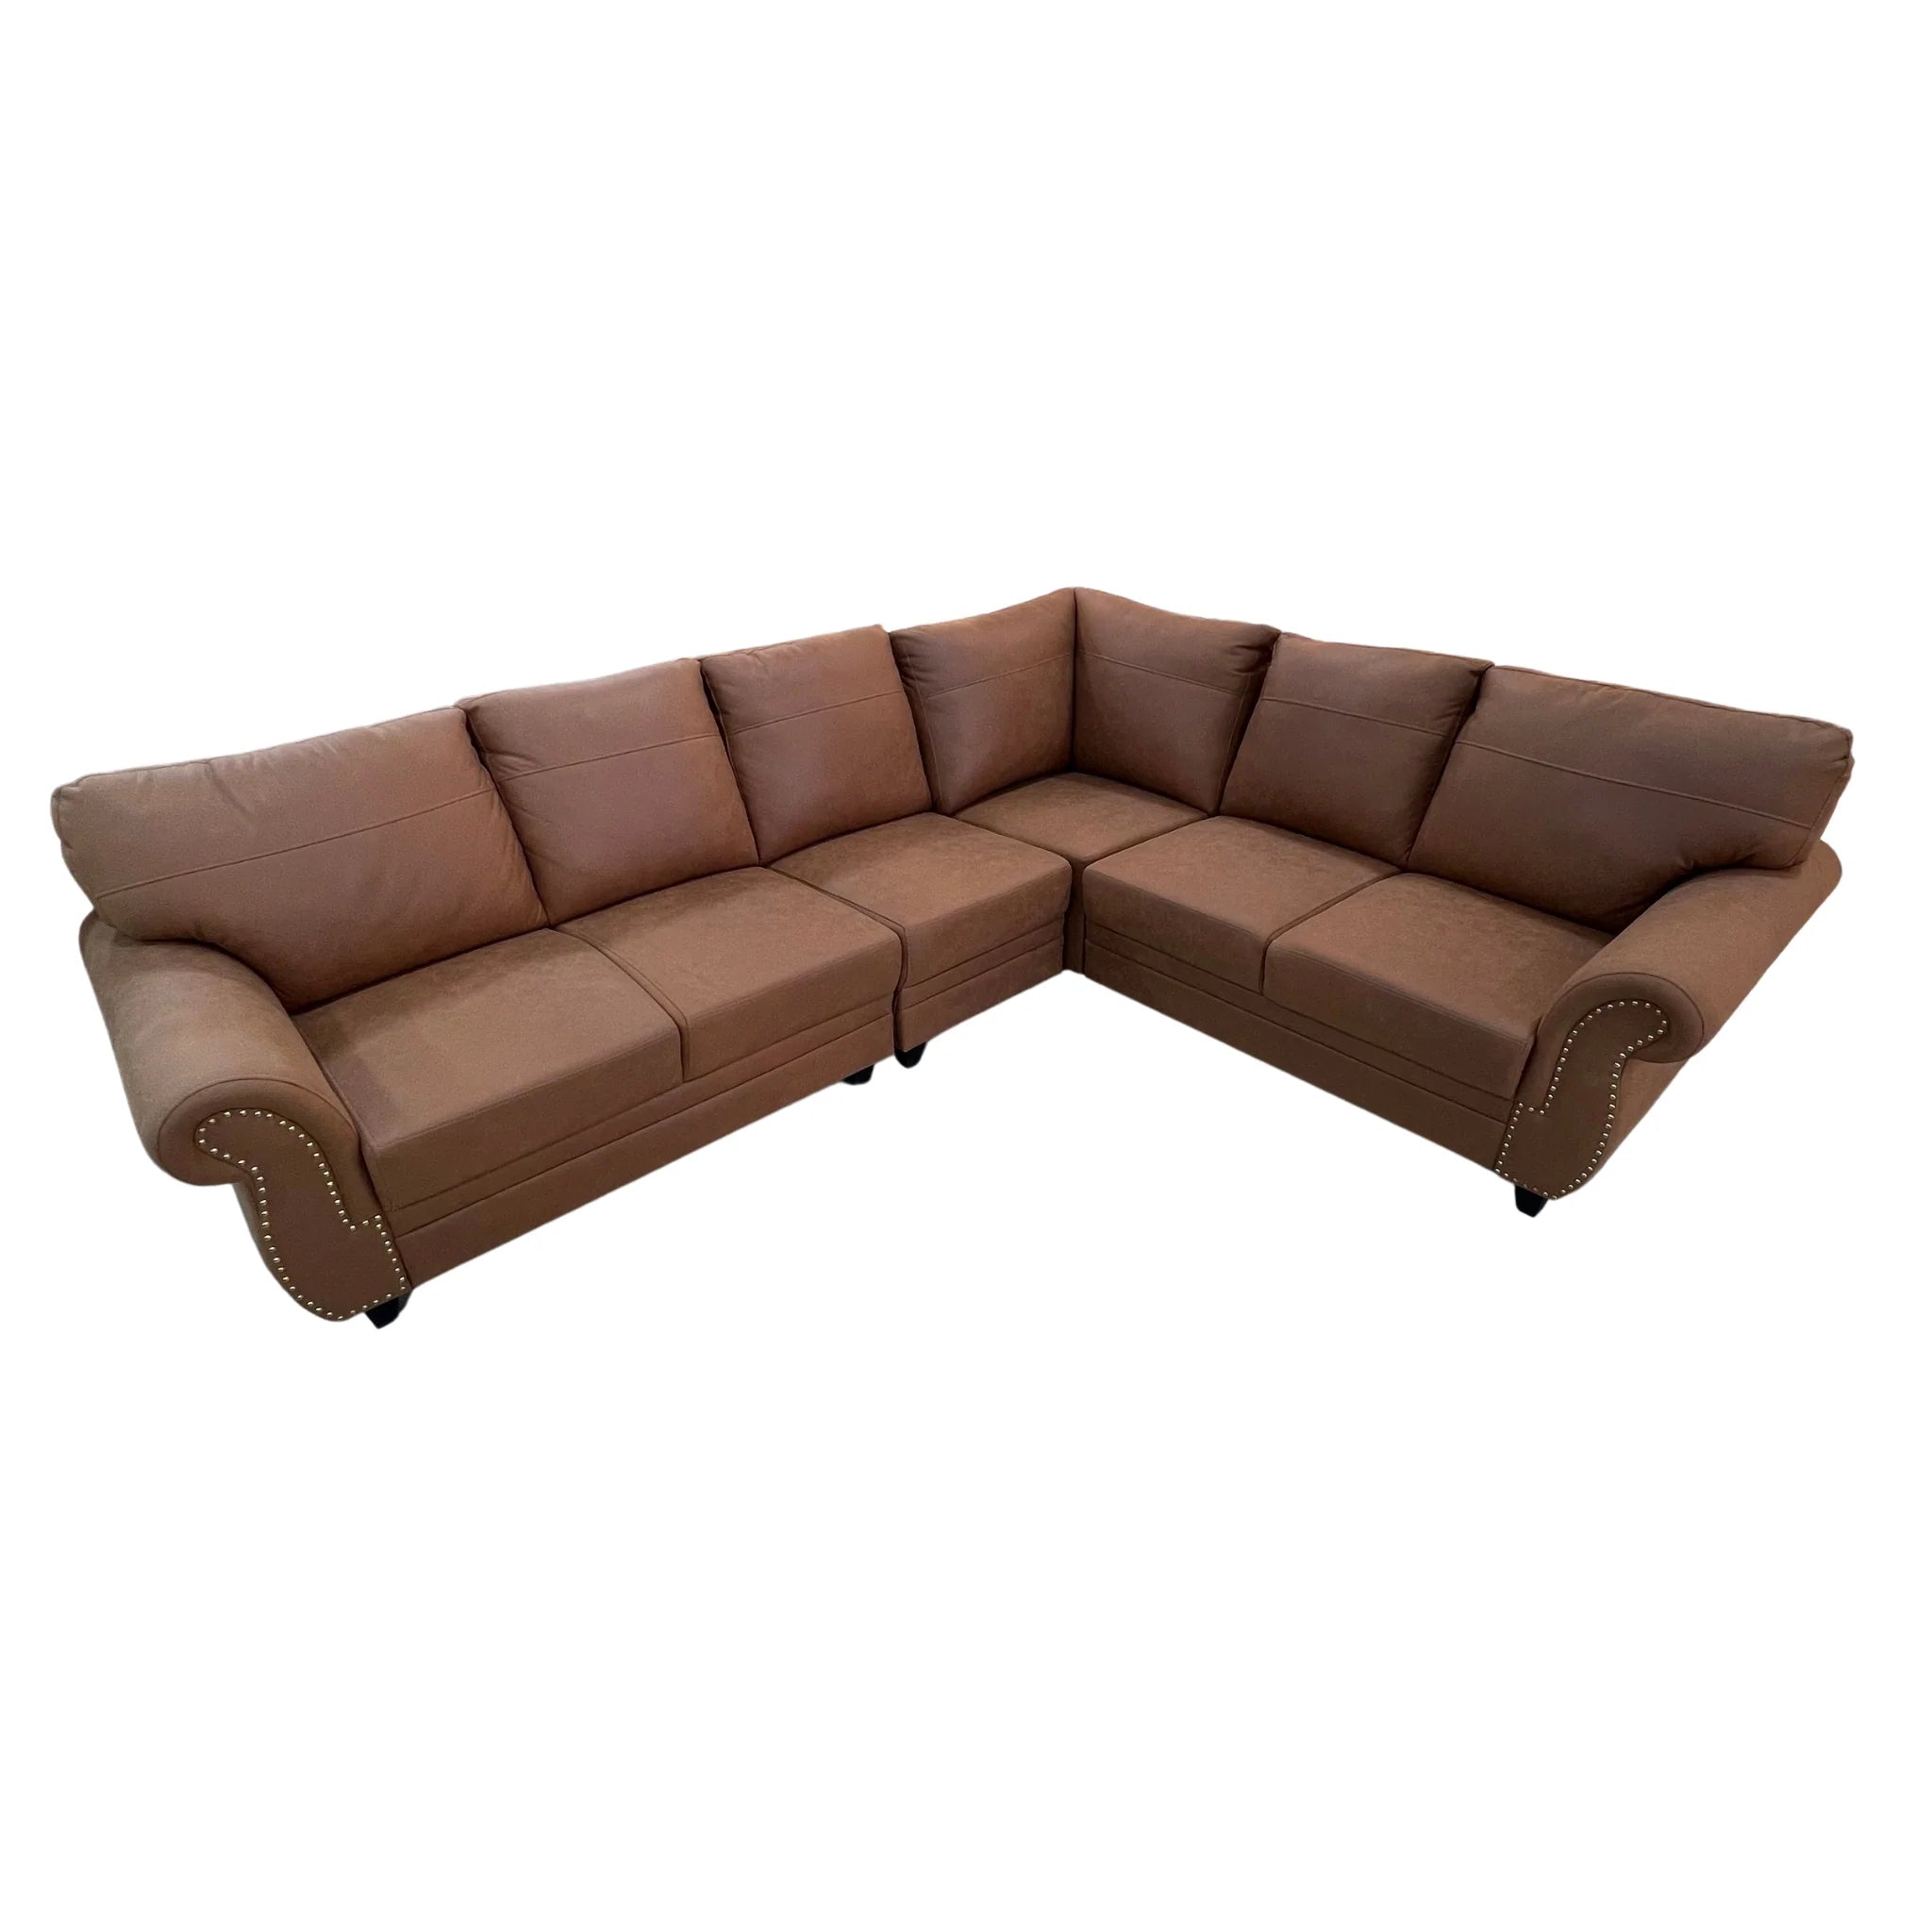 American Corner Sofa